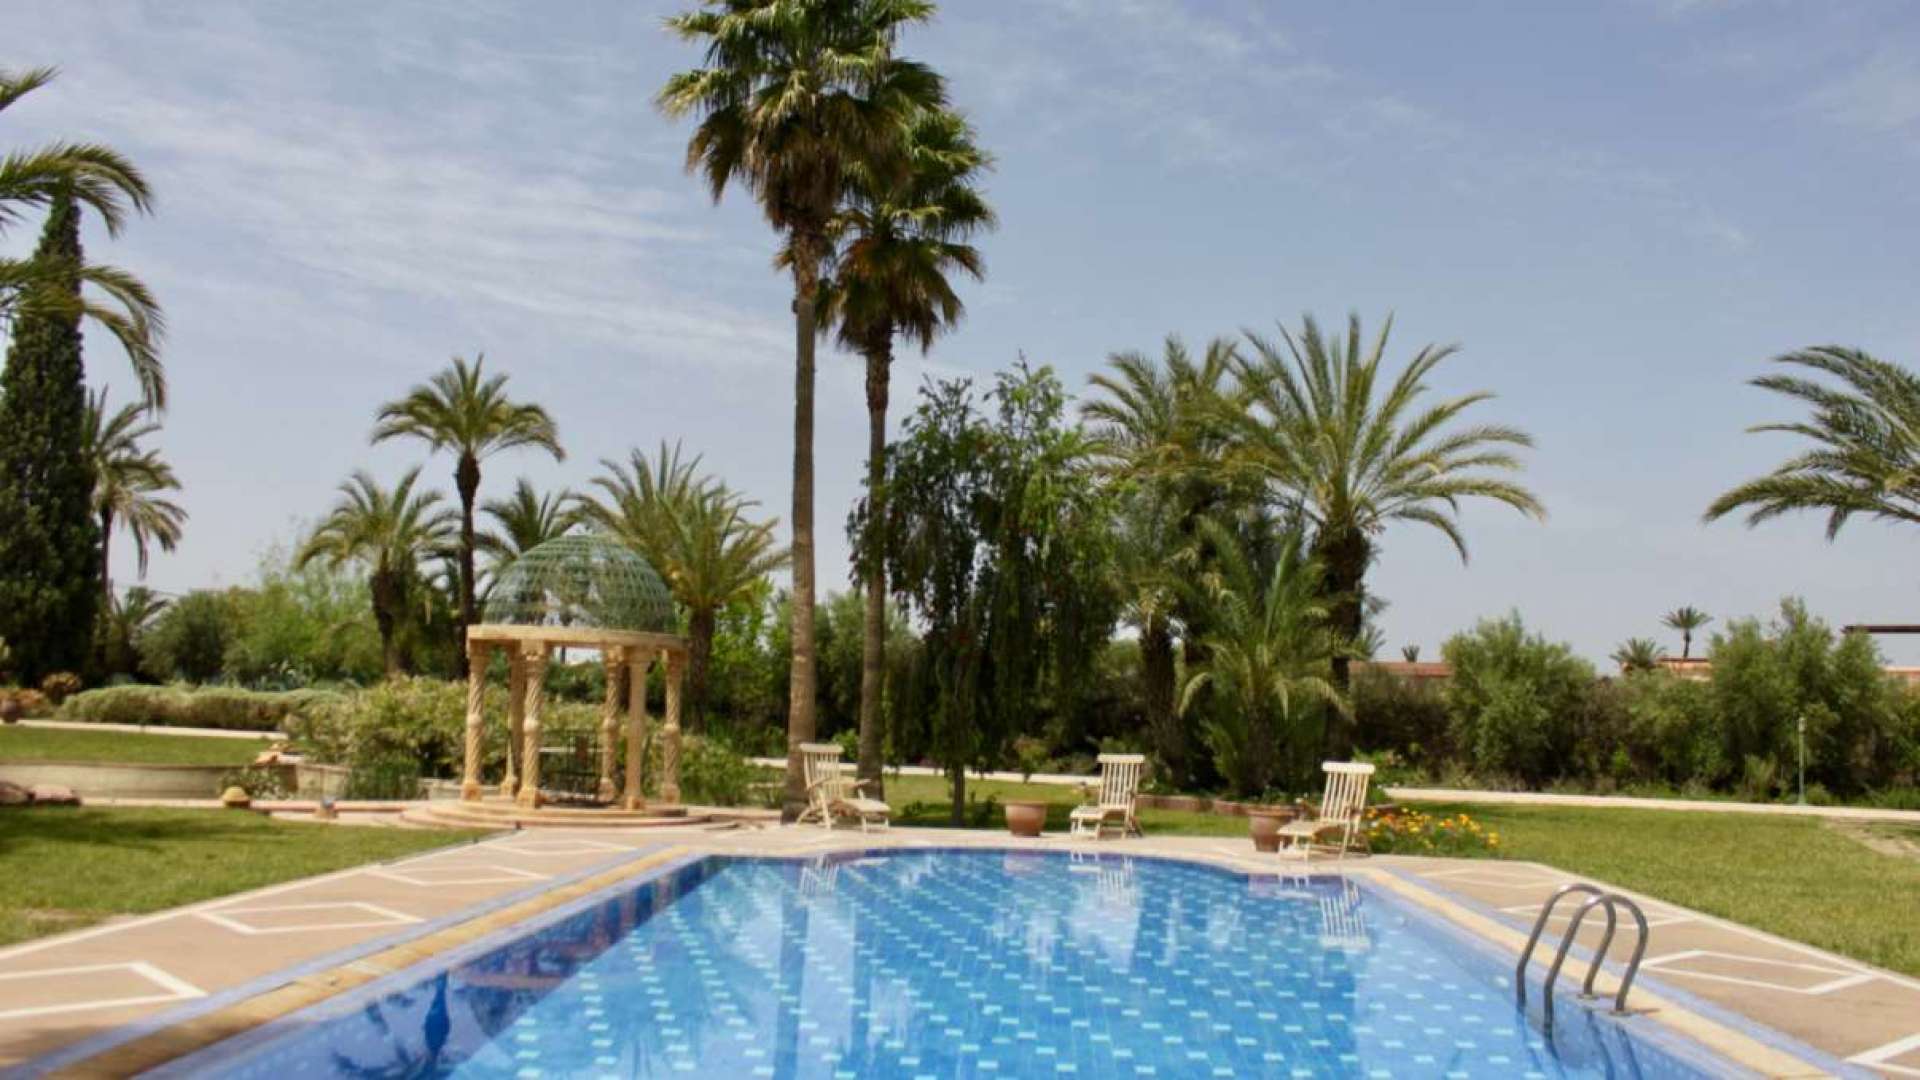 Vente,Villa,Vente jolie propriété privée d’1 Hectare avec un très beau jardin à 20 min. du centre de Marrakech,Marrakech,Bab Atlas